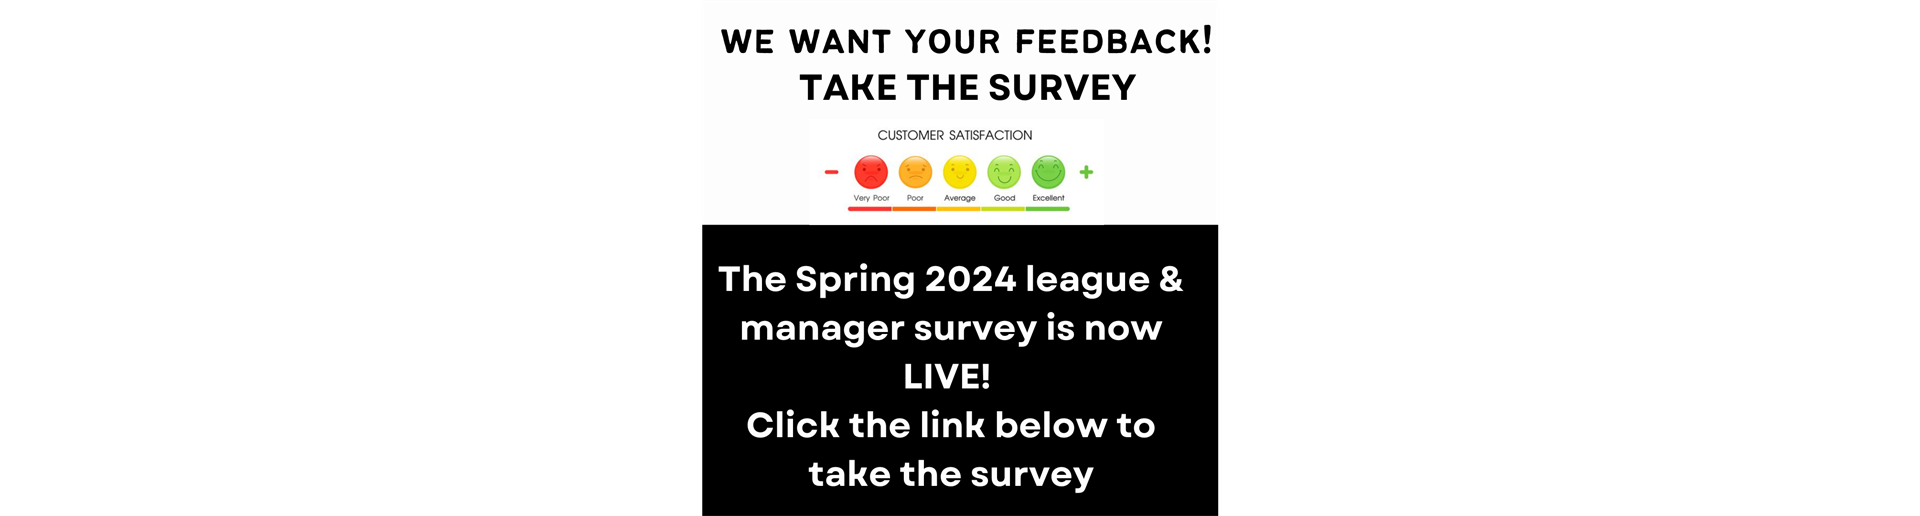 2024 Season Survey - WE VALUE YOUR FEEDBACK!